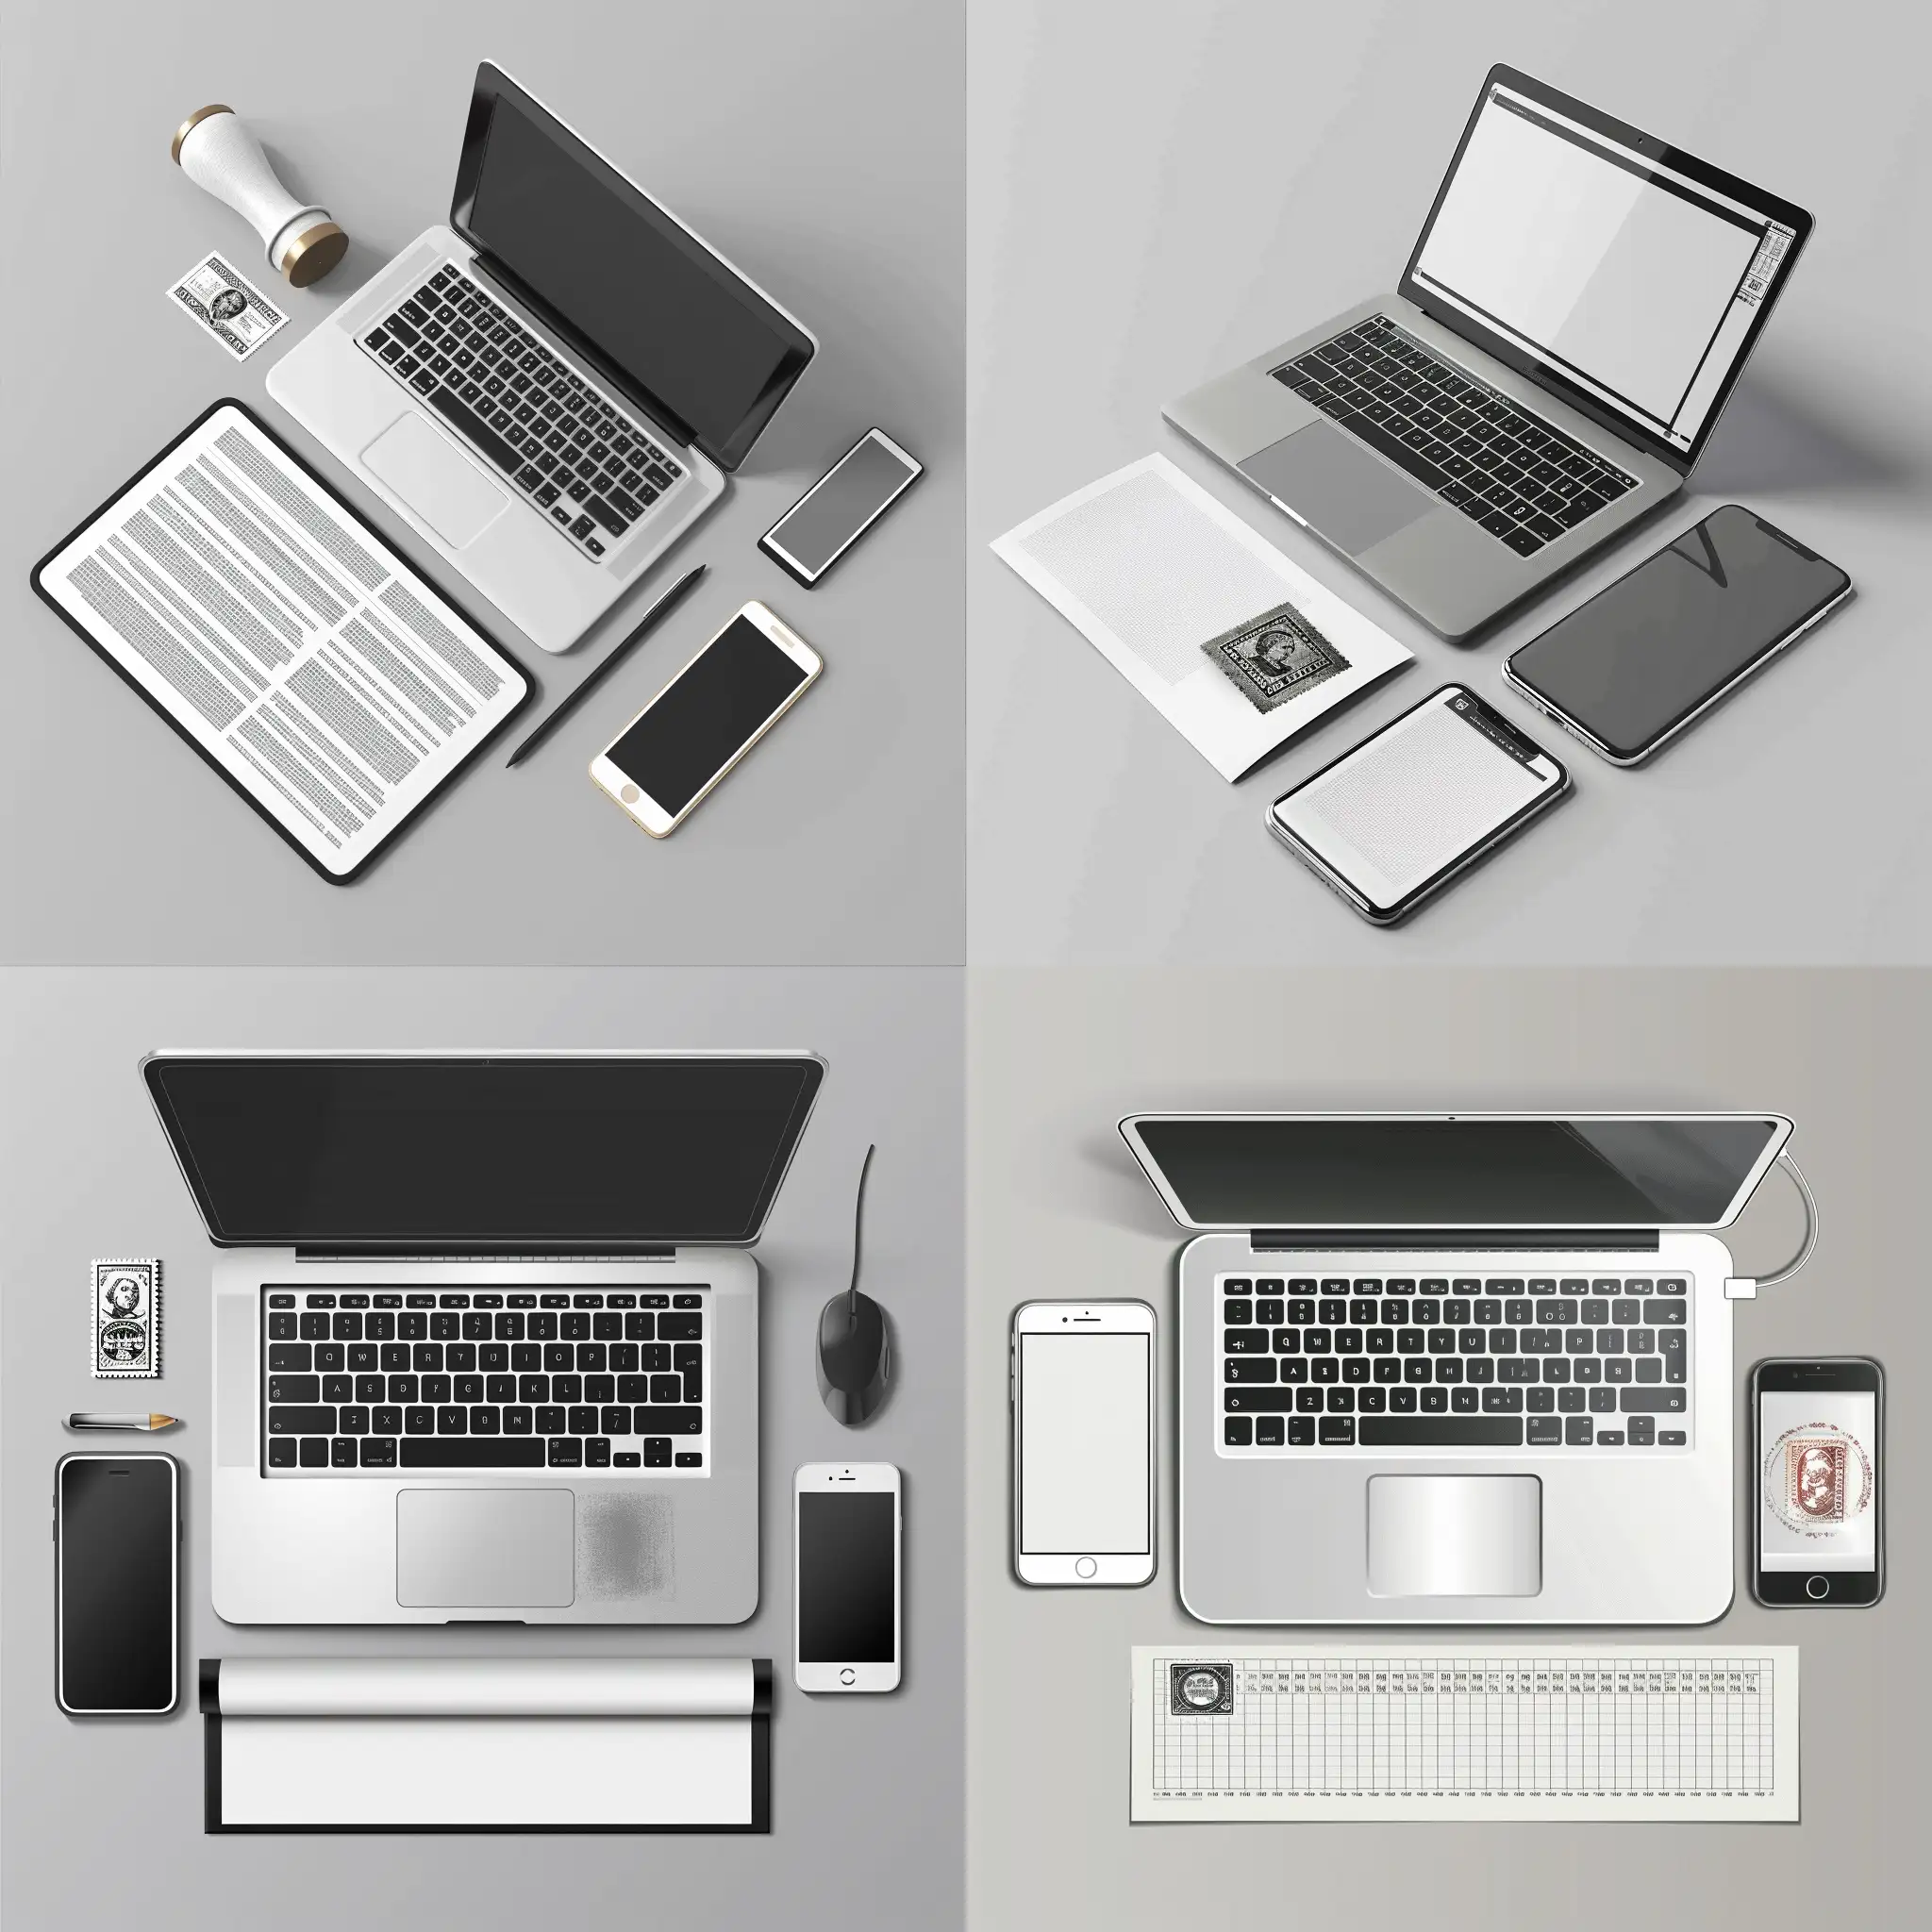 genereza-mi o imagine in care sa fie un laptop un telefon si o foaie cu stampila in format realist in culori, alb-gri



